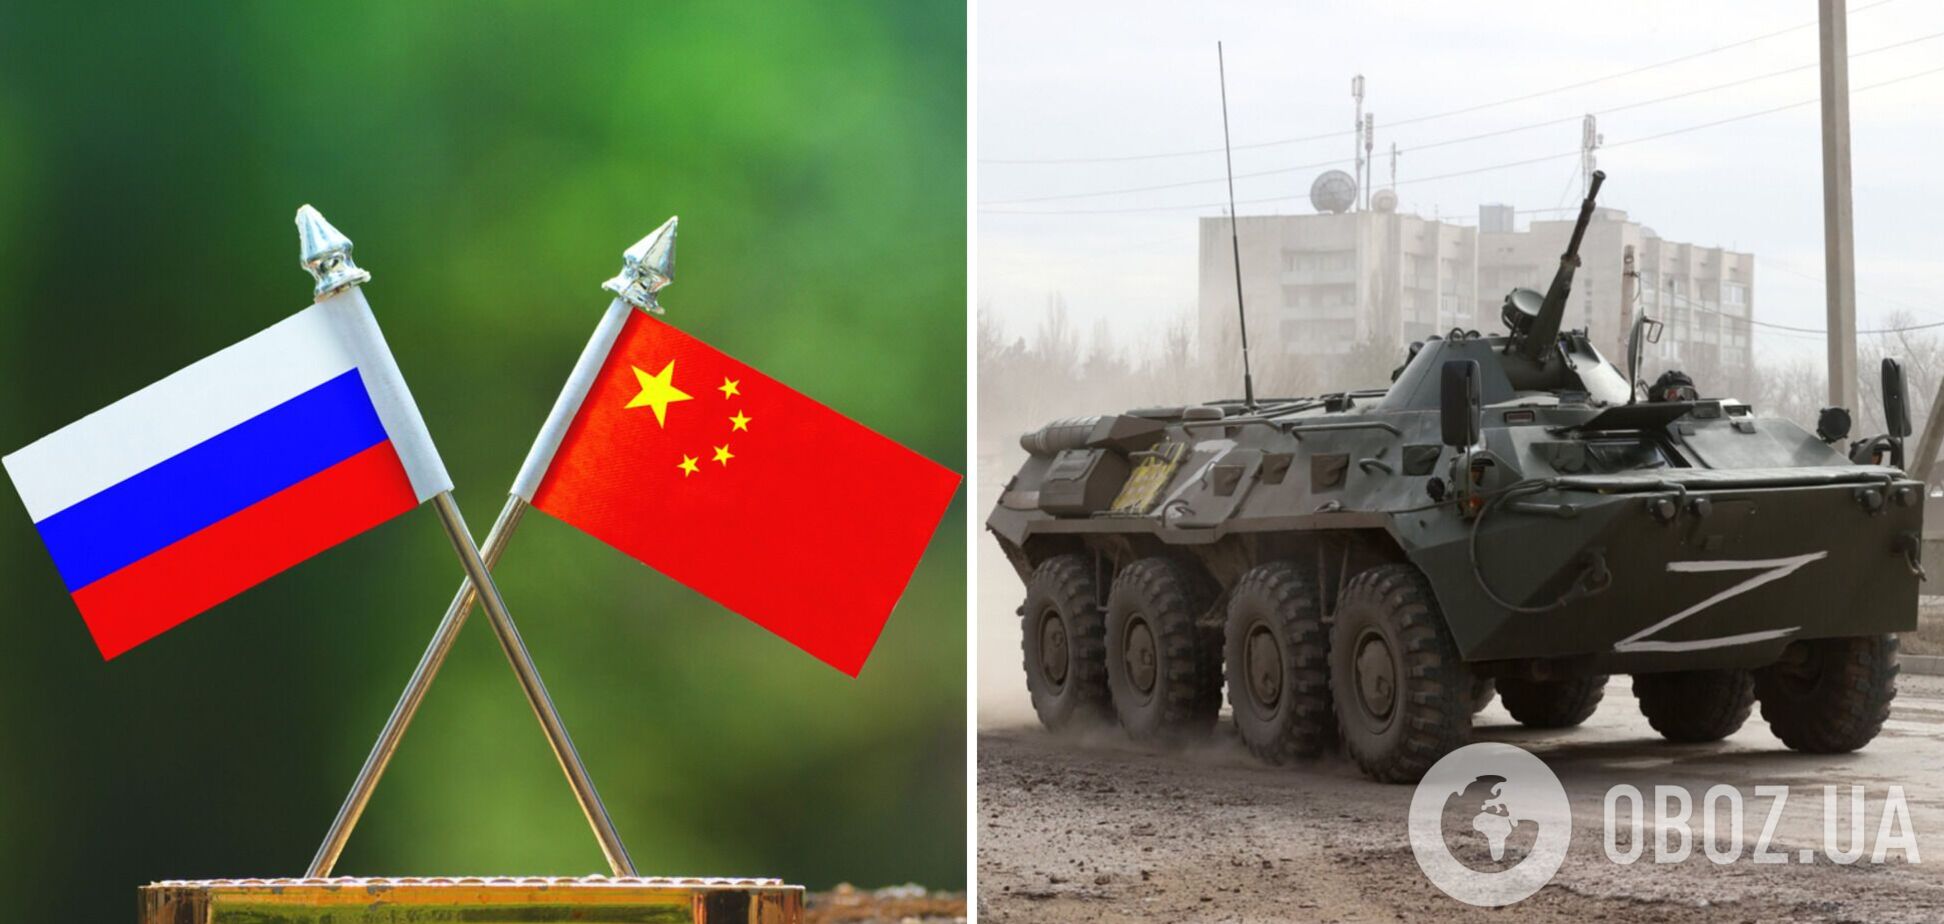 Росія, яка напала на Україну, попросила у Китаю військову допомогу – Financial Times